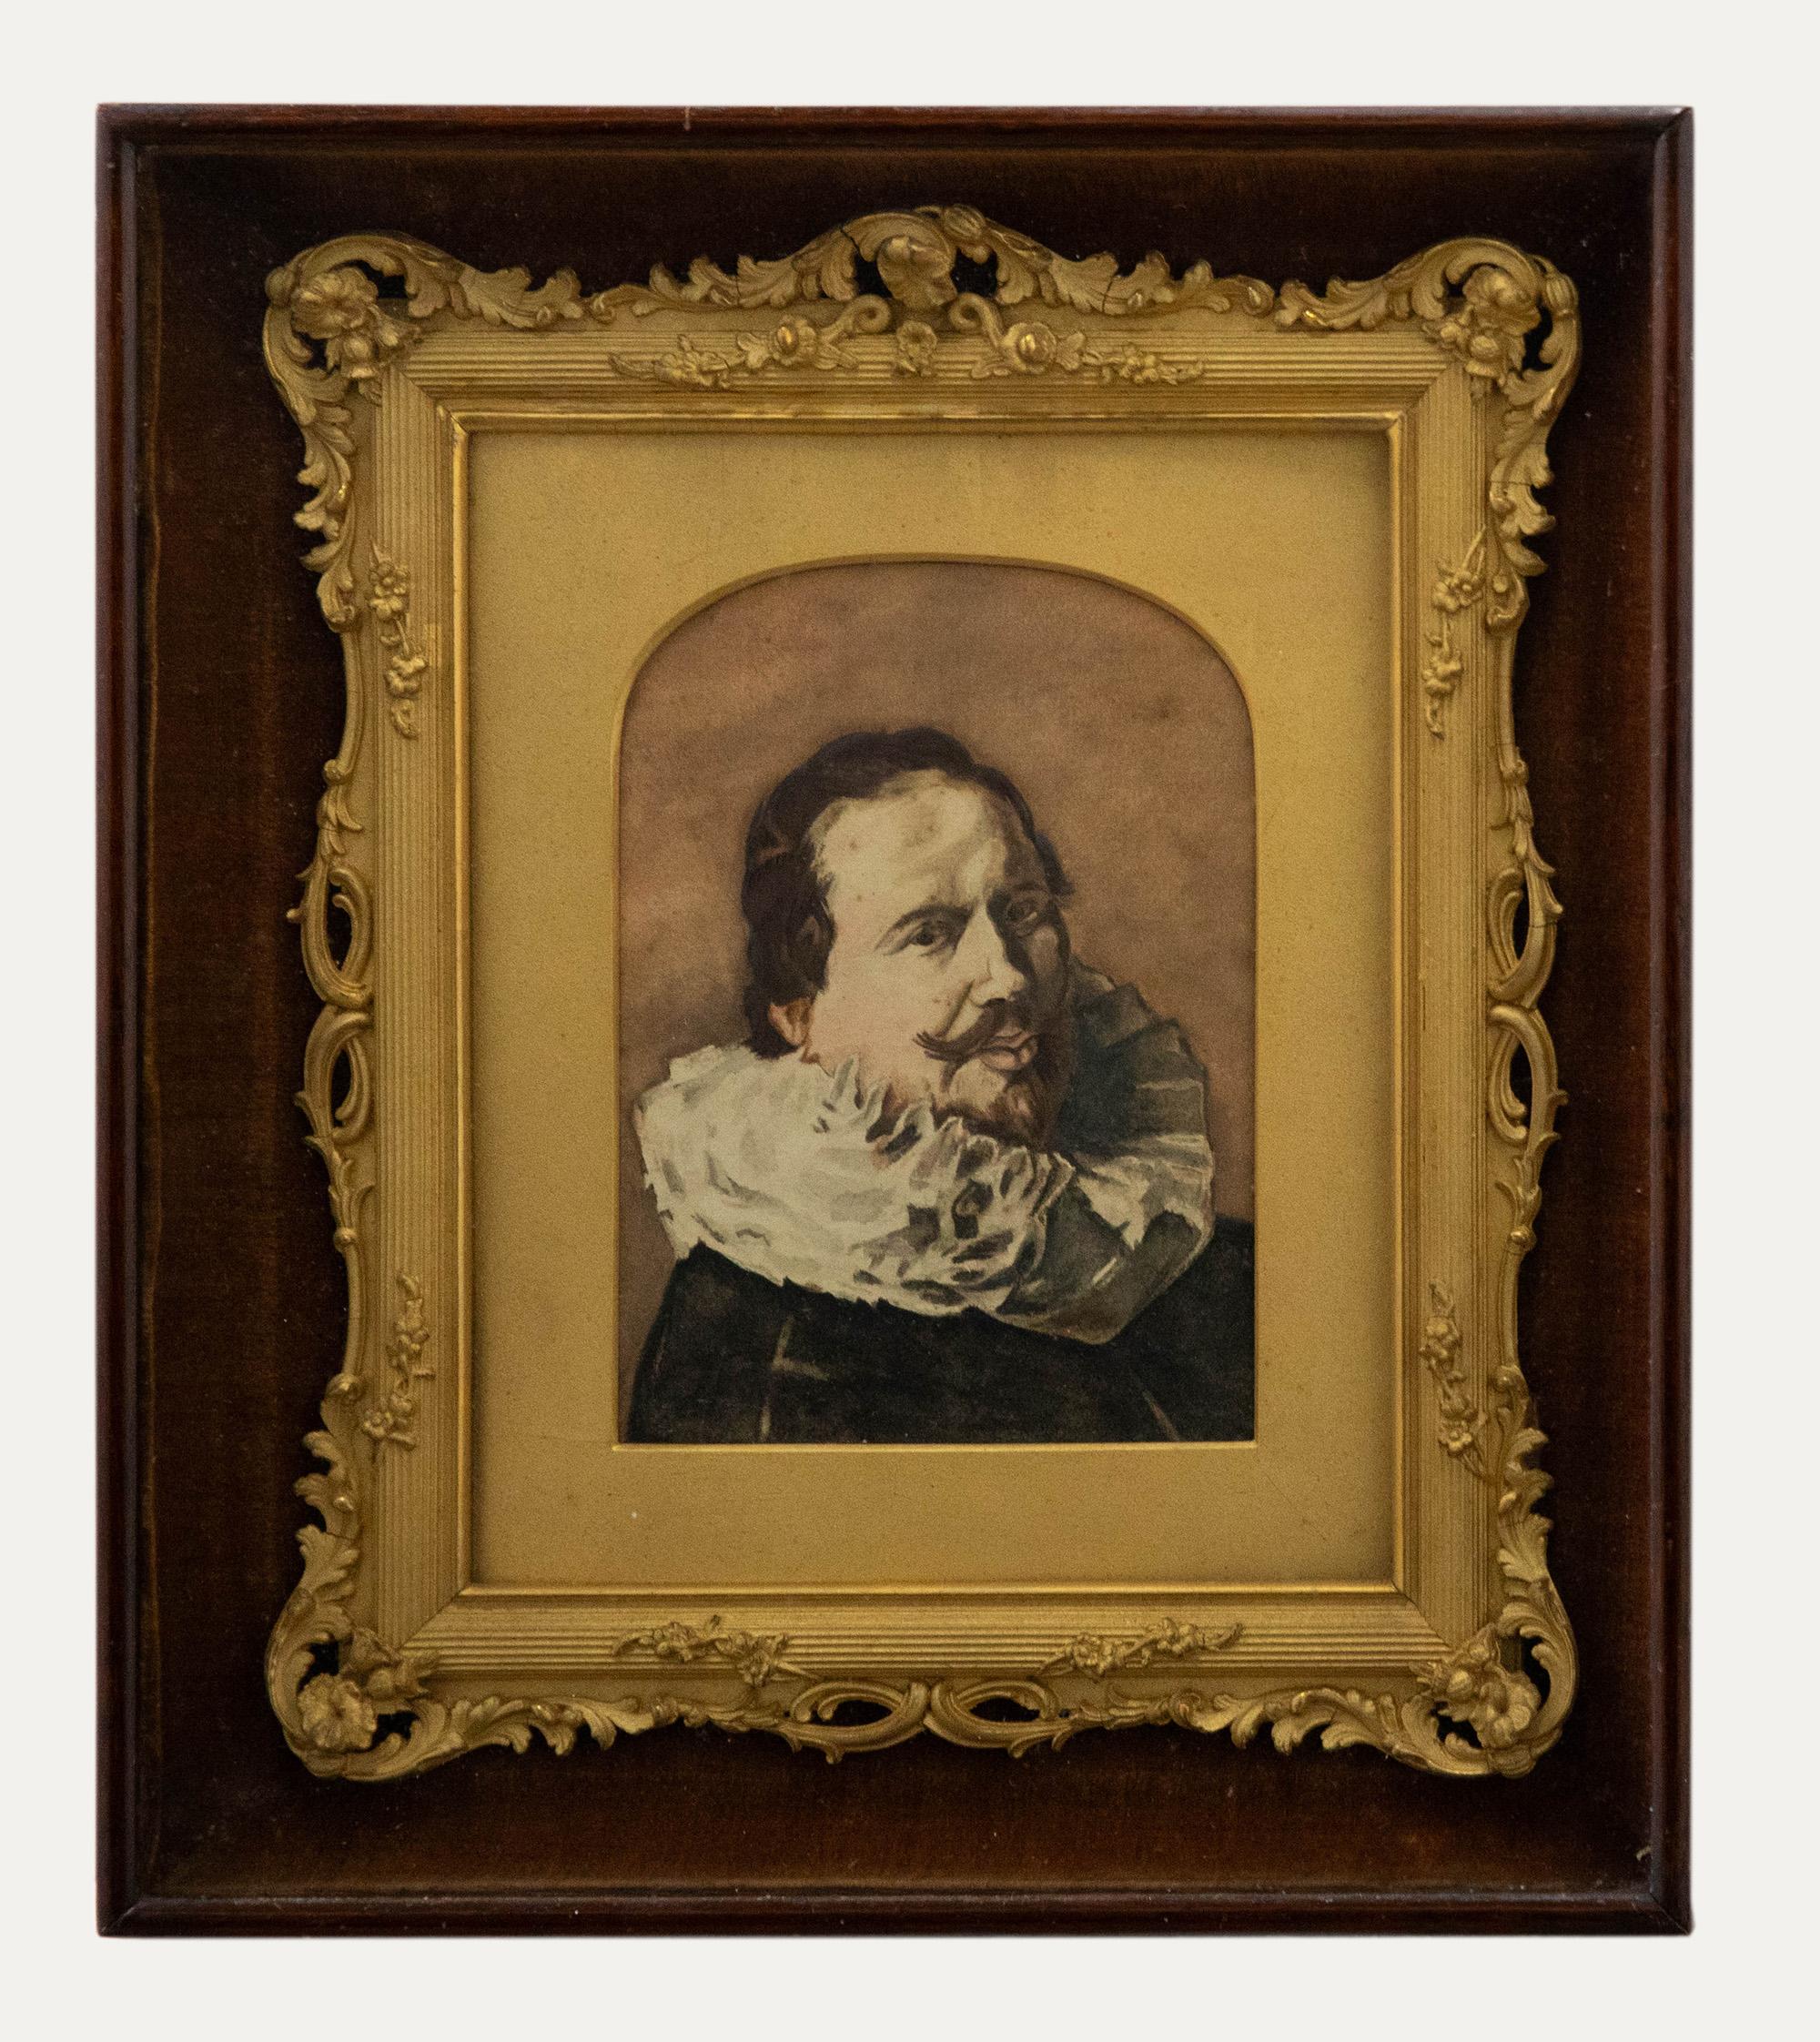 Aquarelle du 19e siècle - Self-Portrait de l'artiste - Art de Unknown